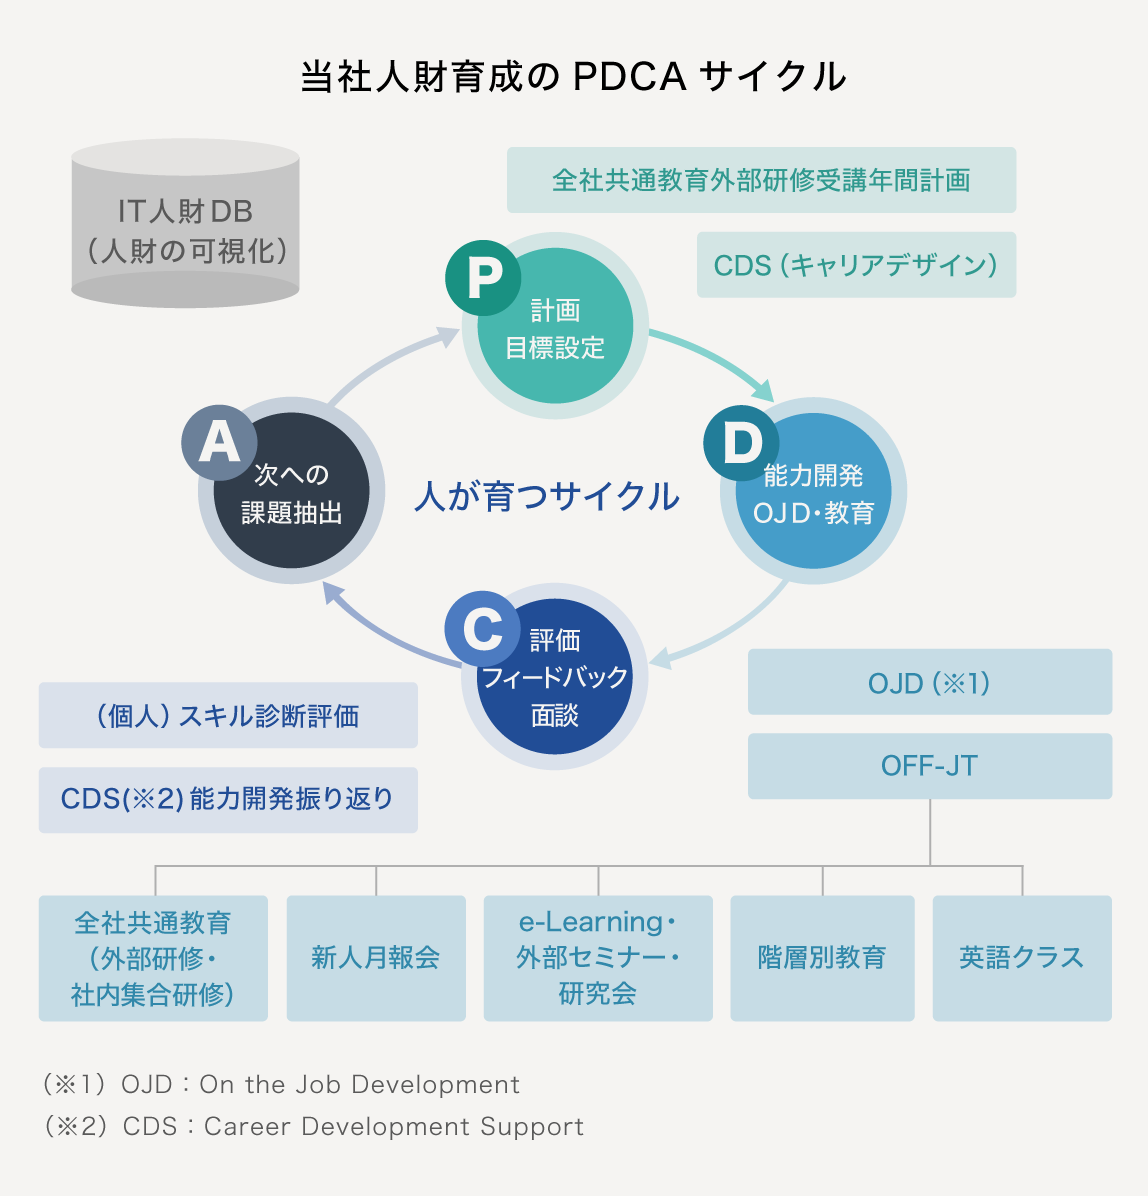 「当社人財育成のPDCAサイクル」の図